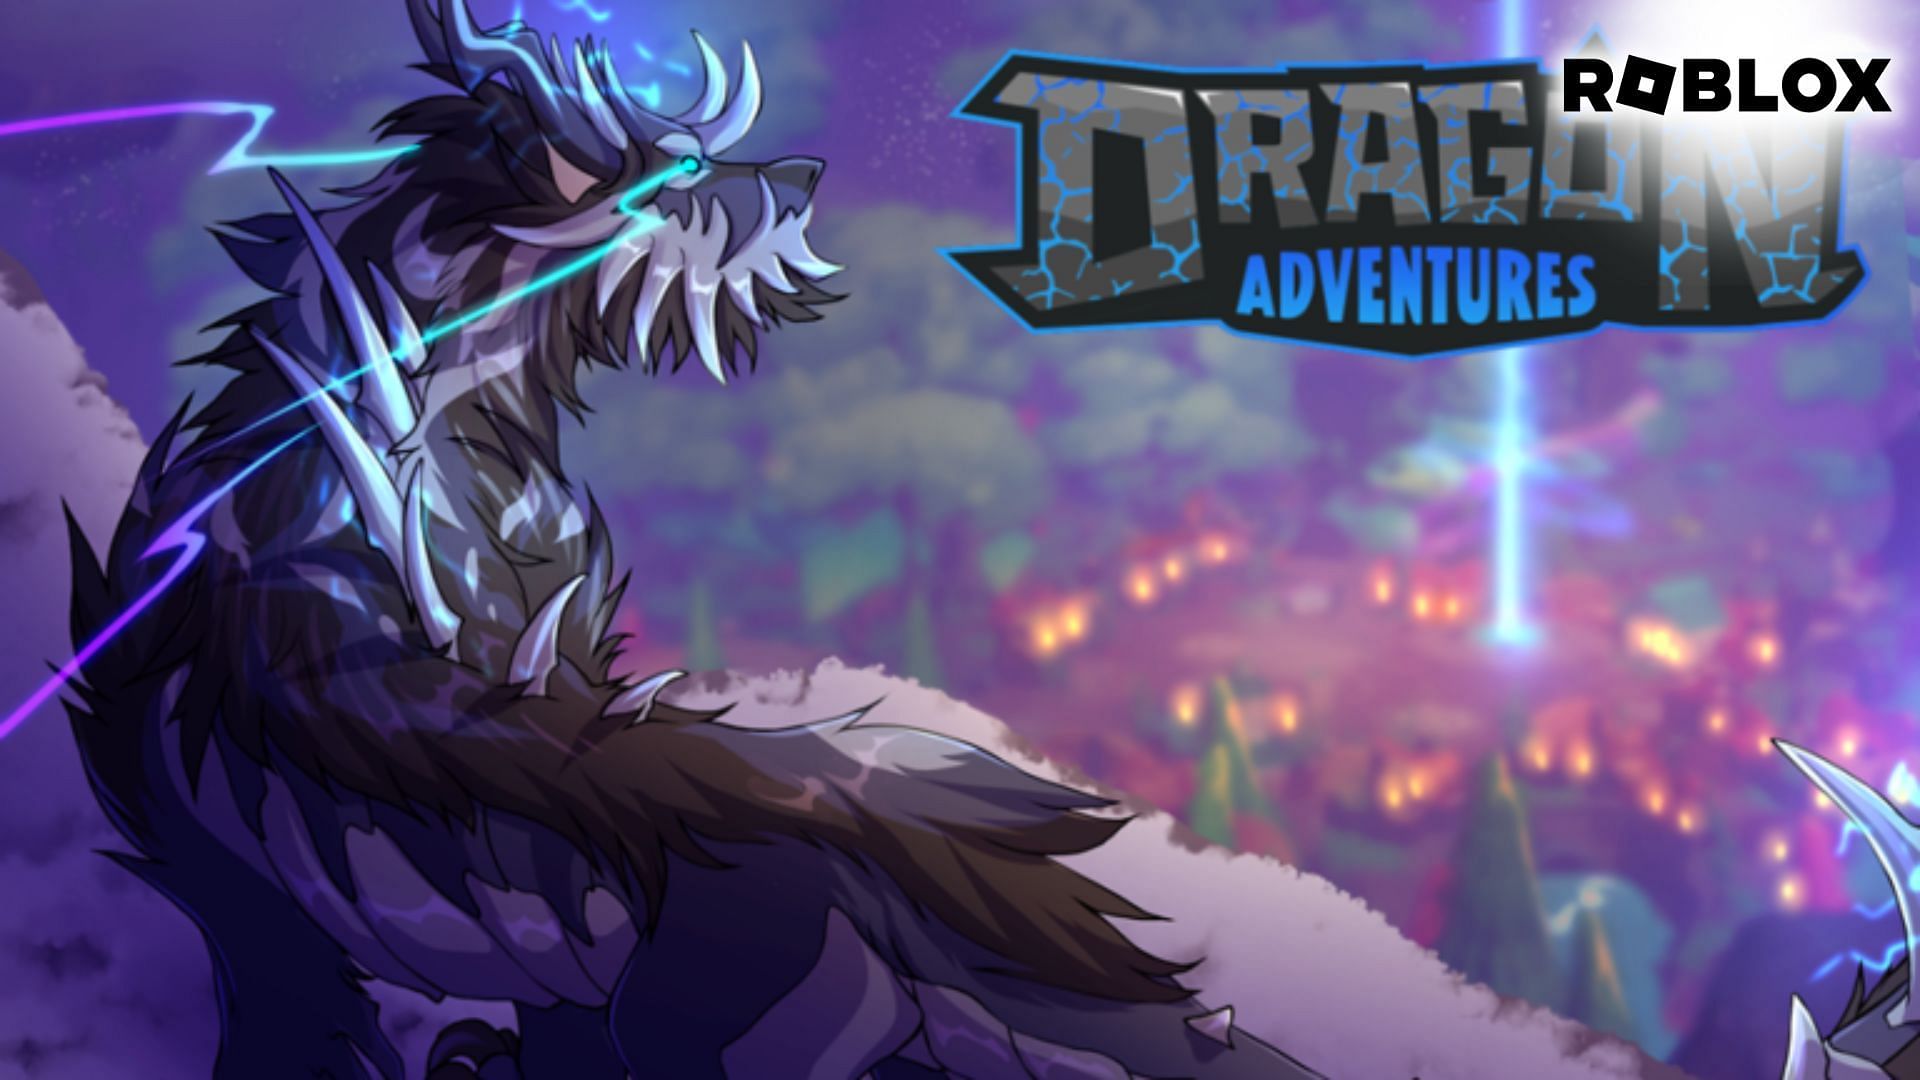 Trade Roblox Dragon Adventures Items